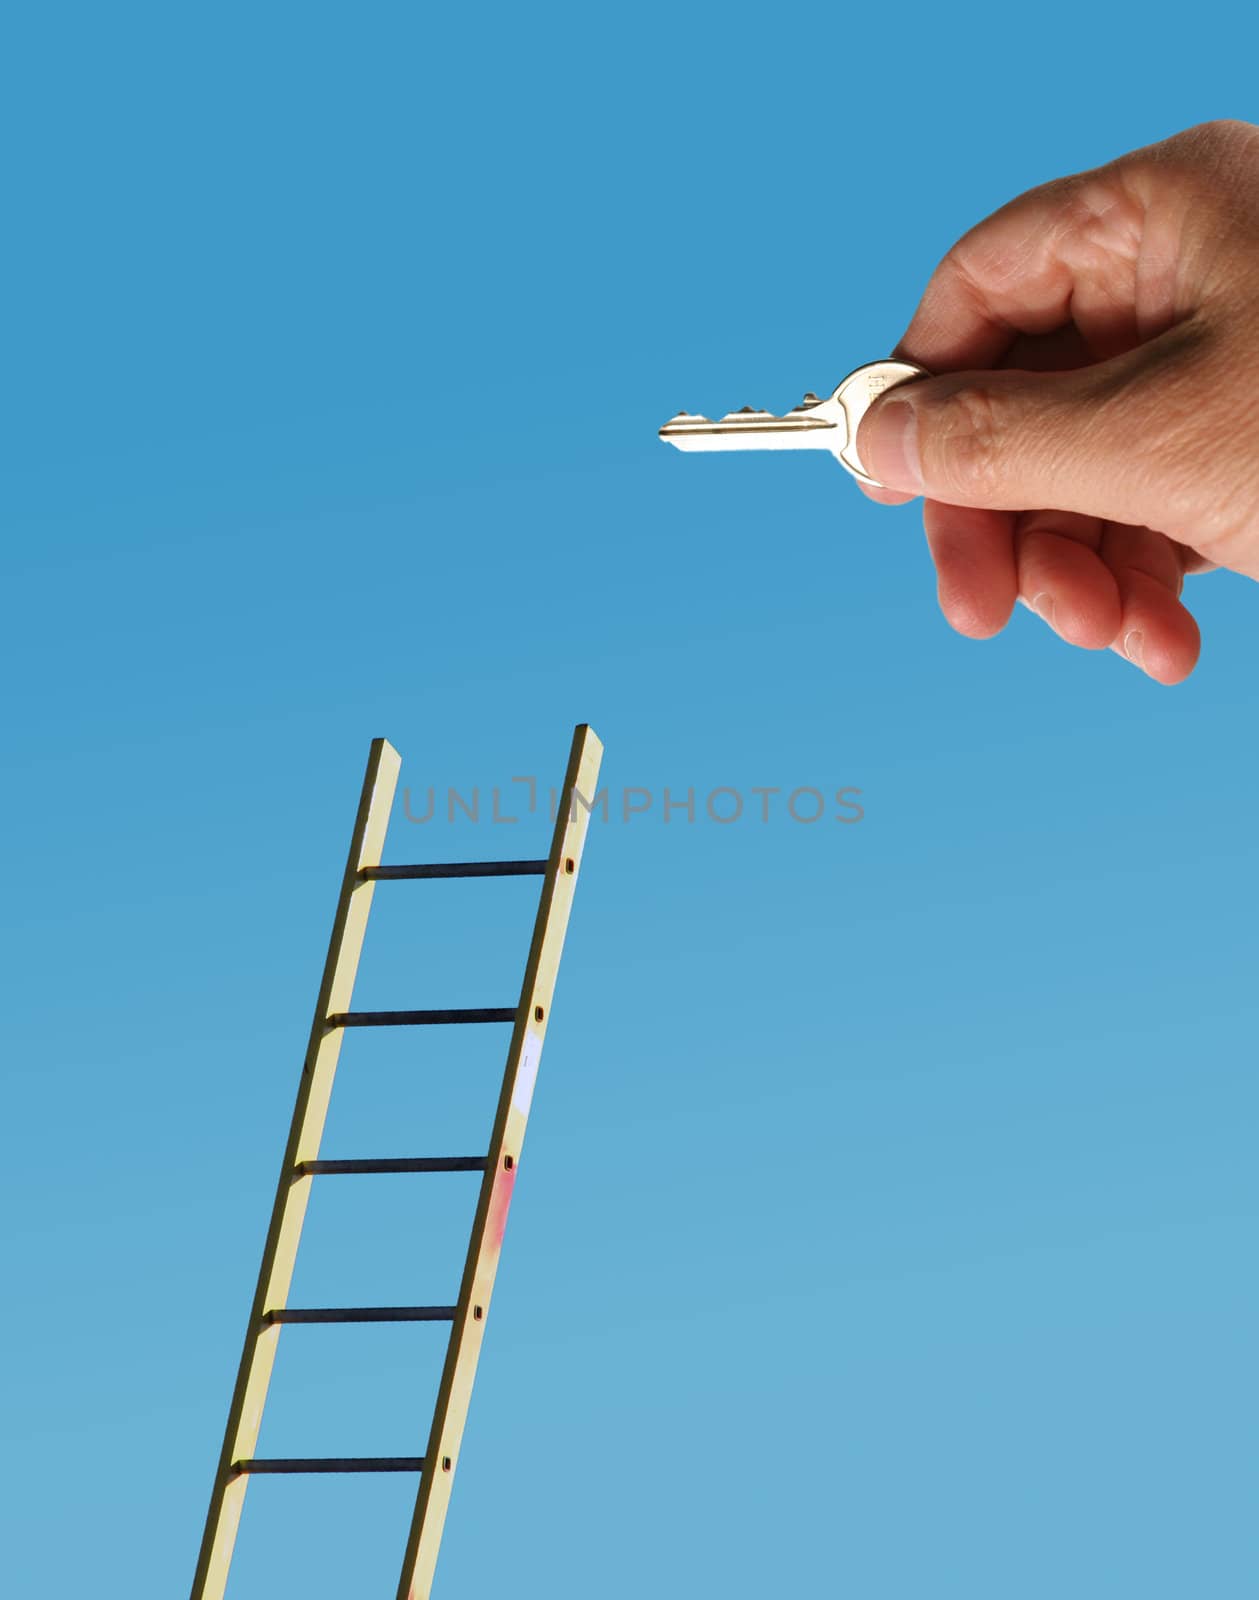 Male hand holding latchkey overlaid onto image of ladder.